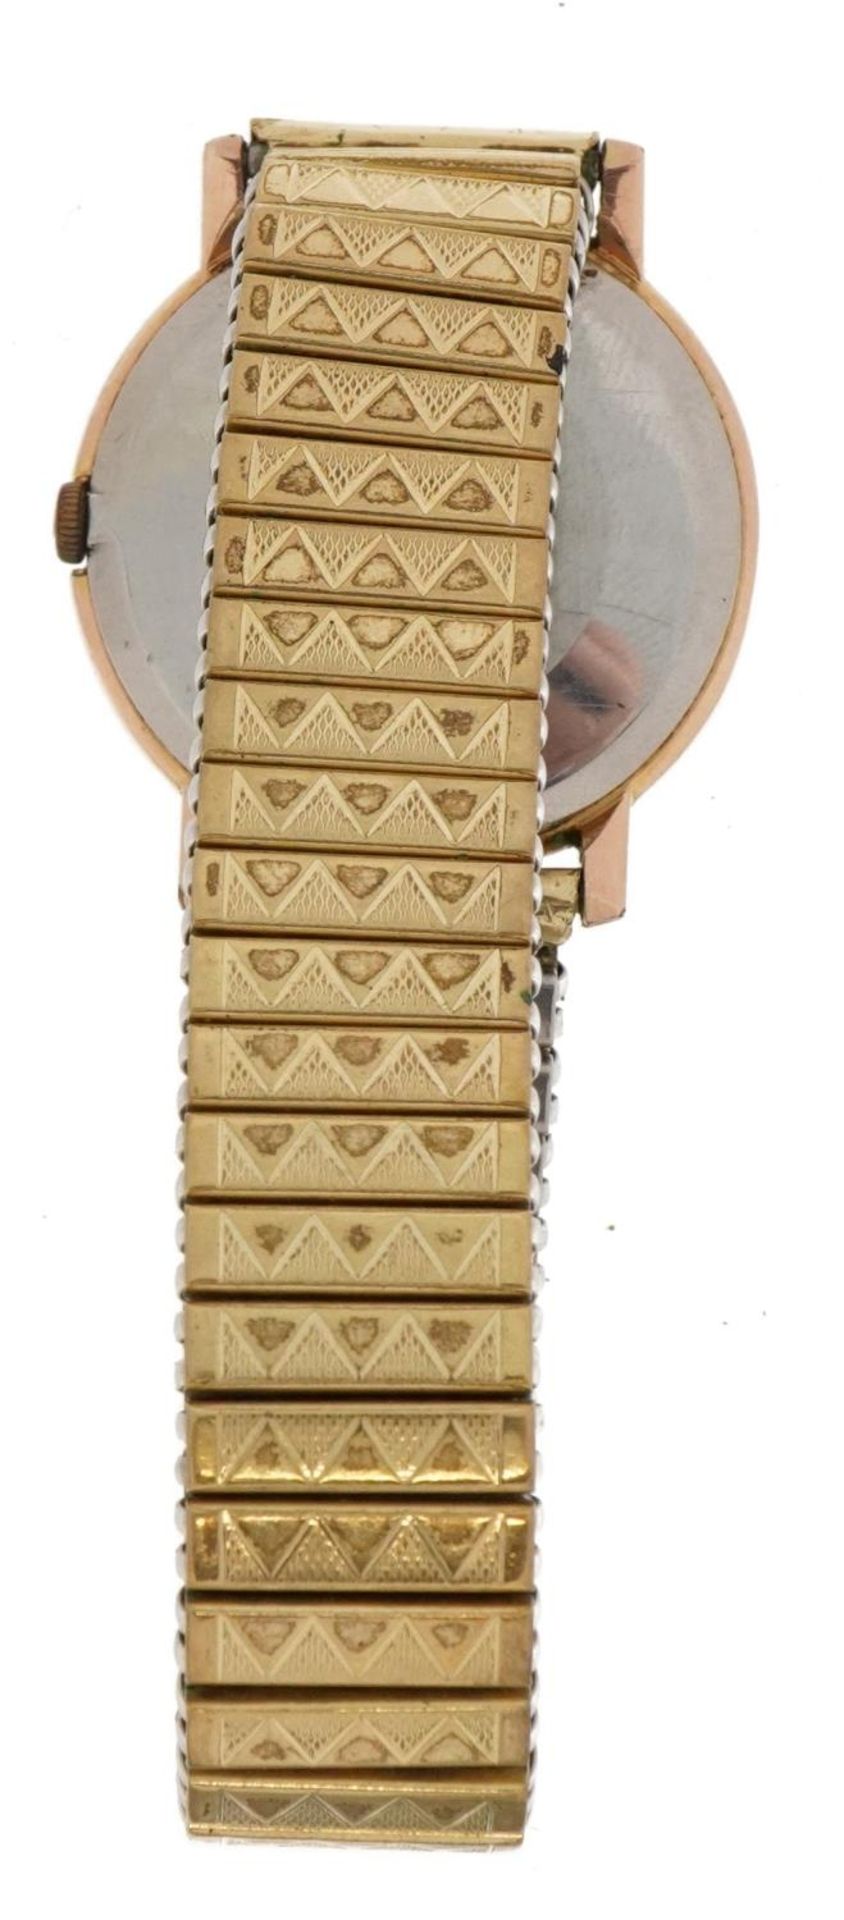 Omega, gentlemen's wristwatch, the case 30mm in diameter - Image 3 of 4